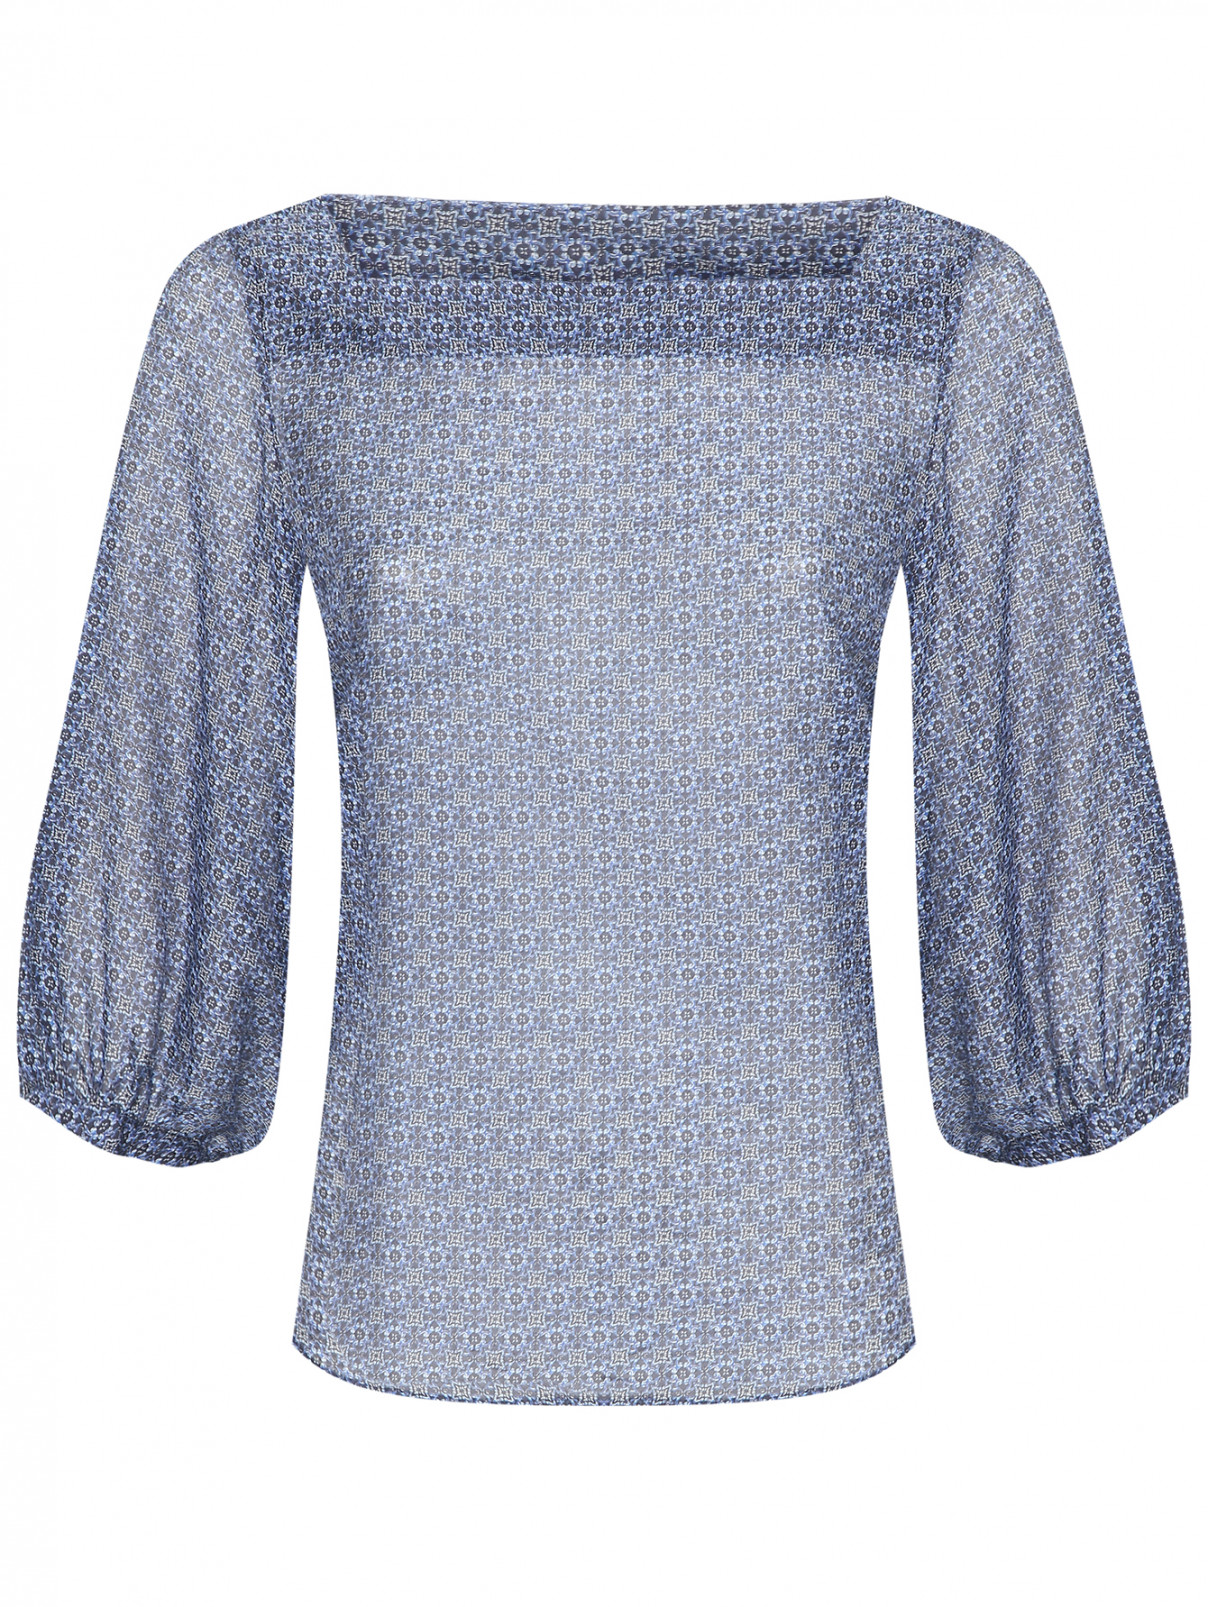 Блуза из хлопка и шелка с узором Caractere  –  Общий вид  – Цвет:  Синий